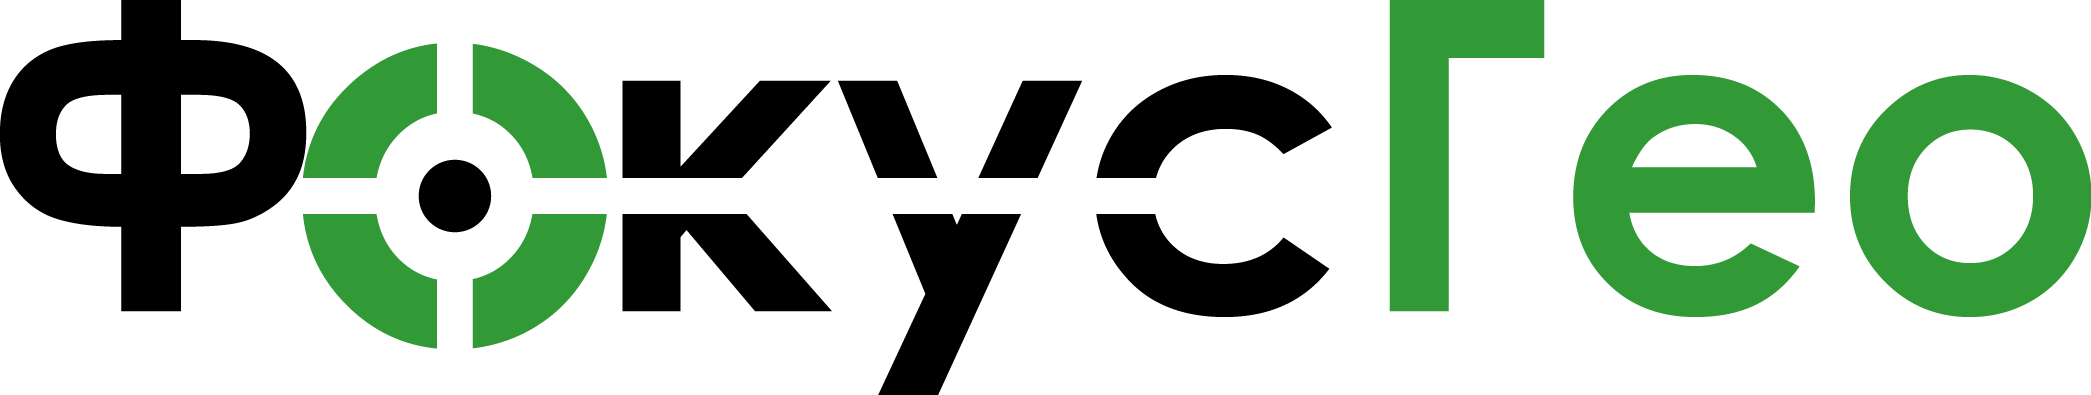 495 651. Интергео логотип вектор. Интергео.